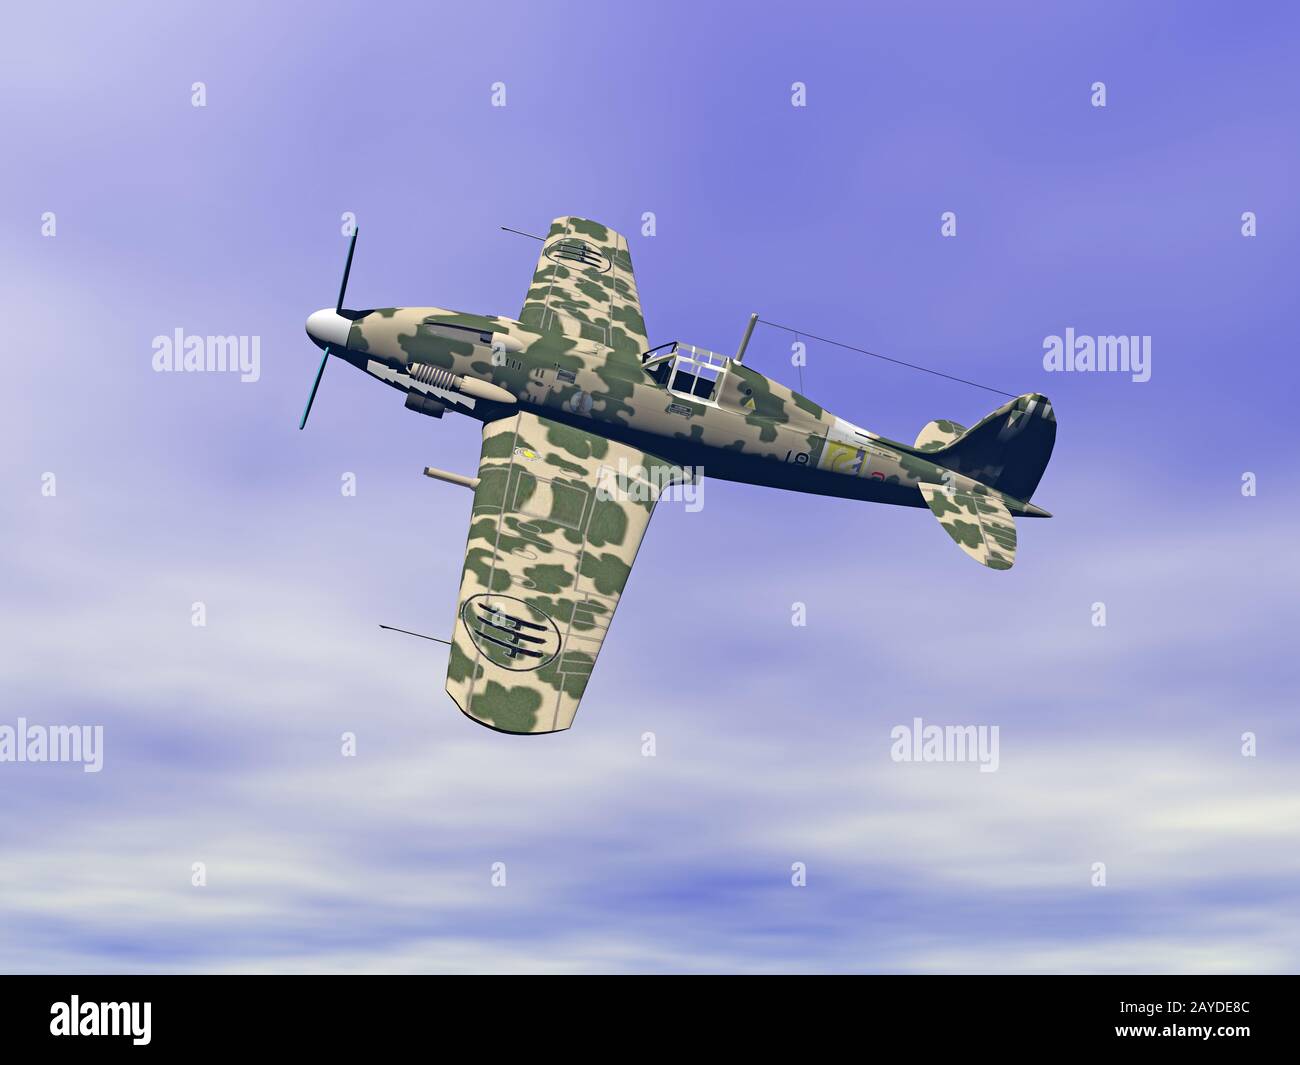 Avion dans le ciel avec peinture camouflage Banque D'Images